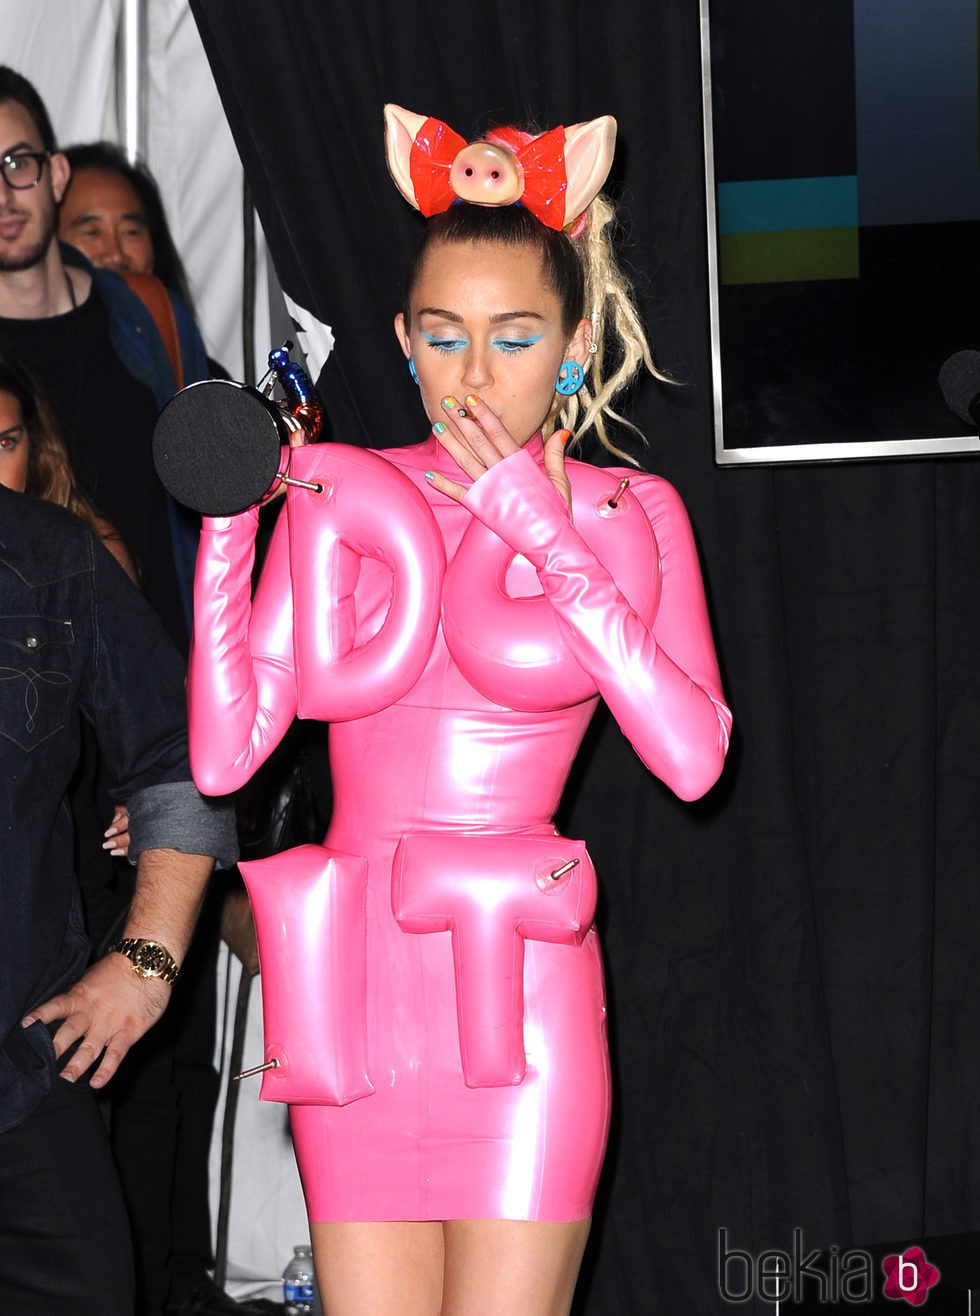 Miley Cyrus fumando en el backstage de los Video Music Awards 2015